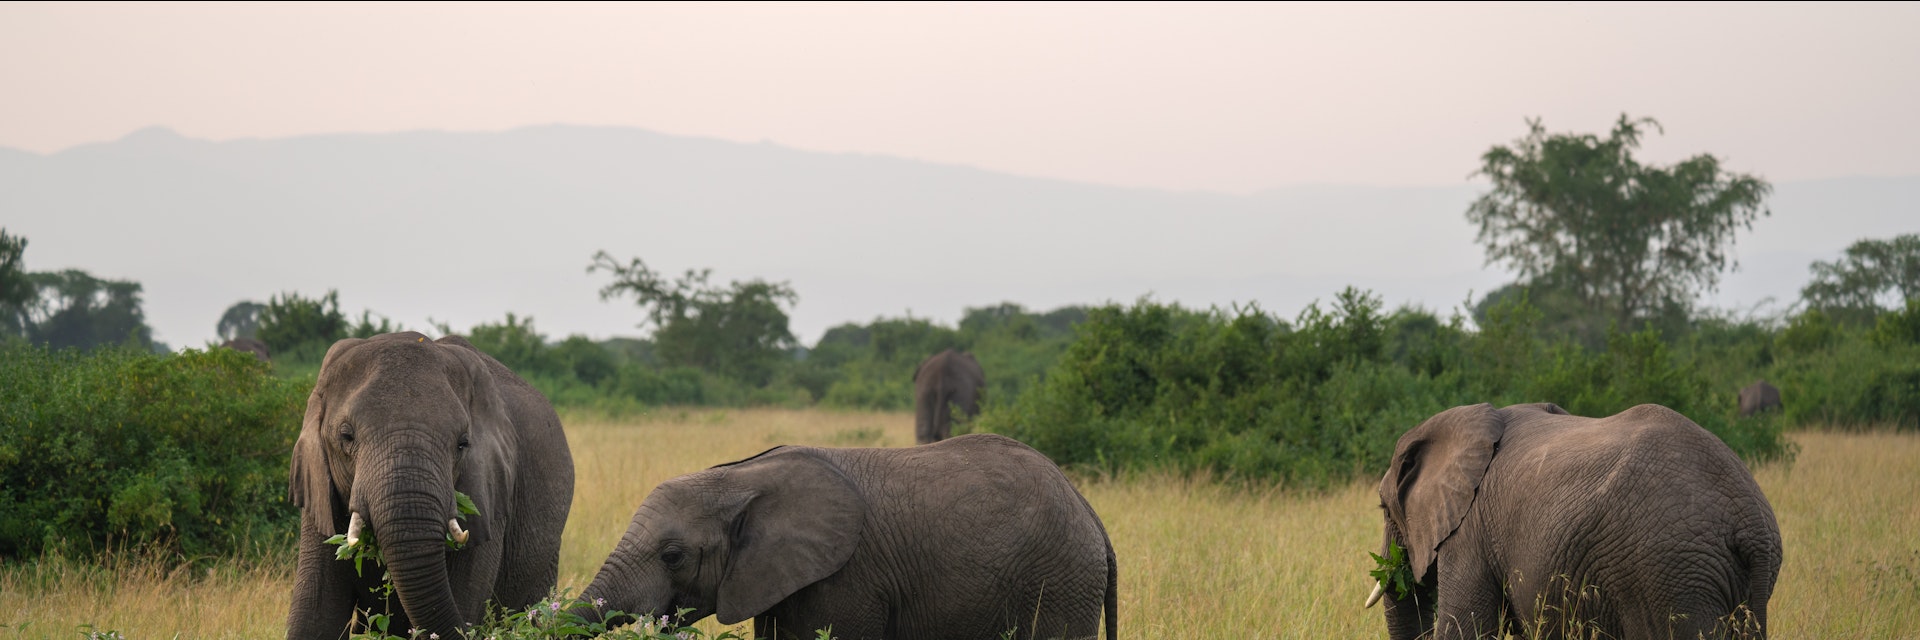 African elephants in Queen Elizabeth National Park, Uganda.